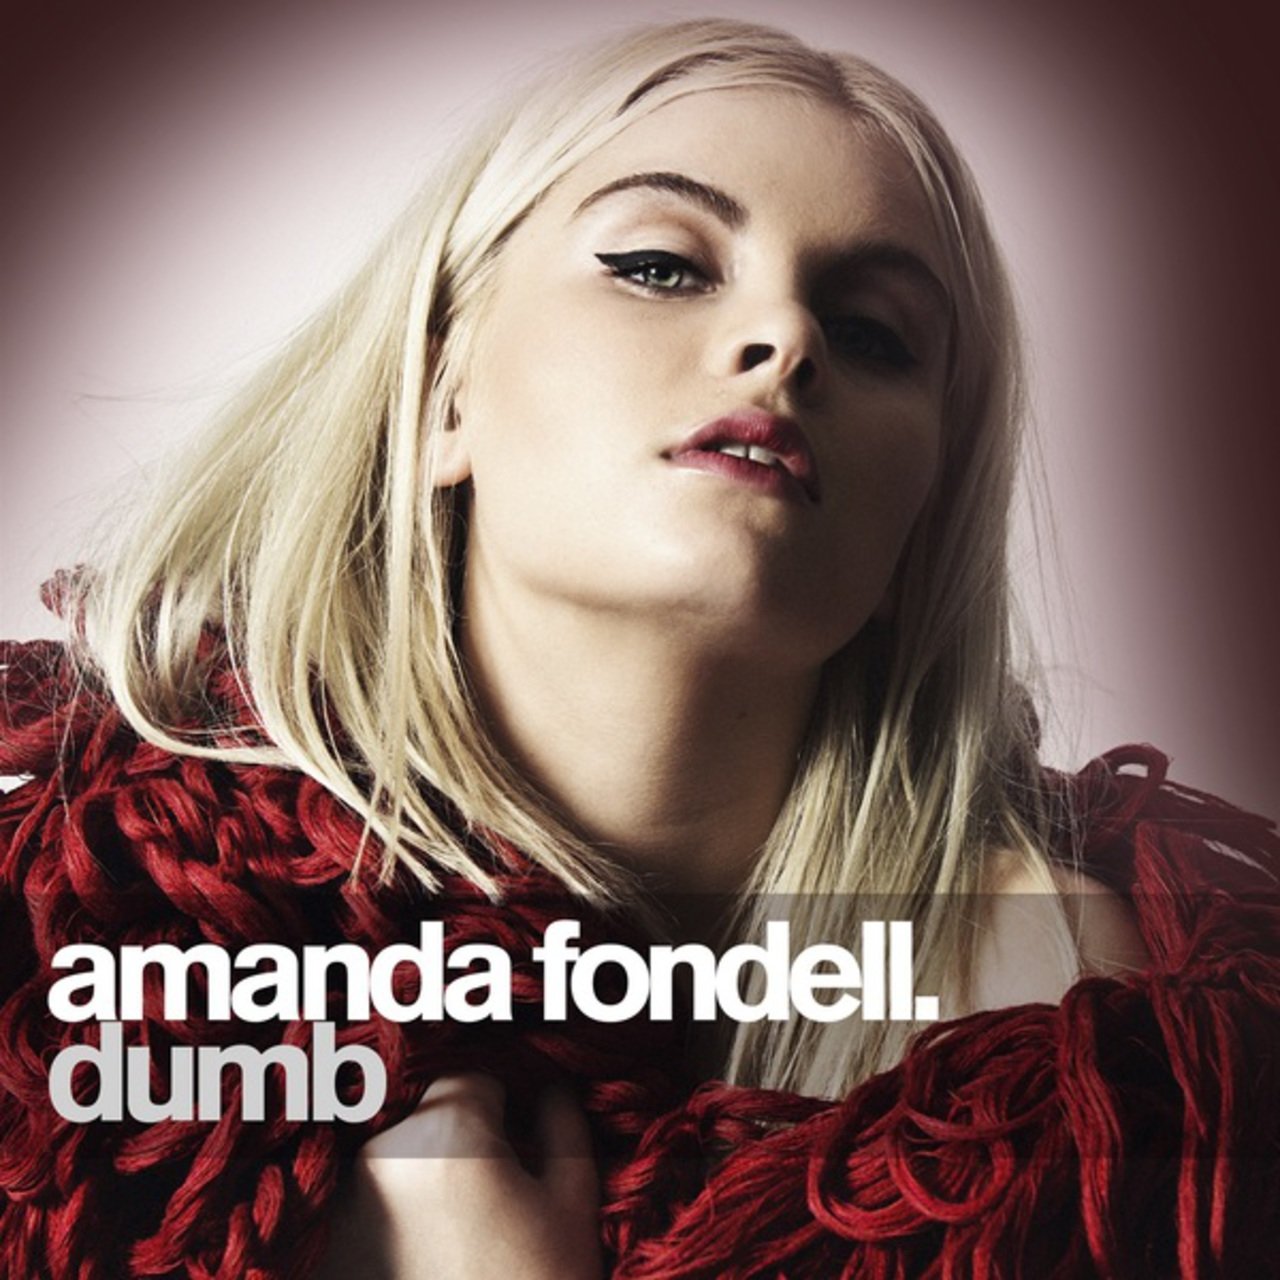 Amanda Fondell Dumb cover artwork